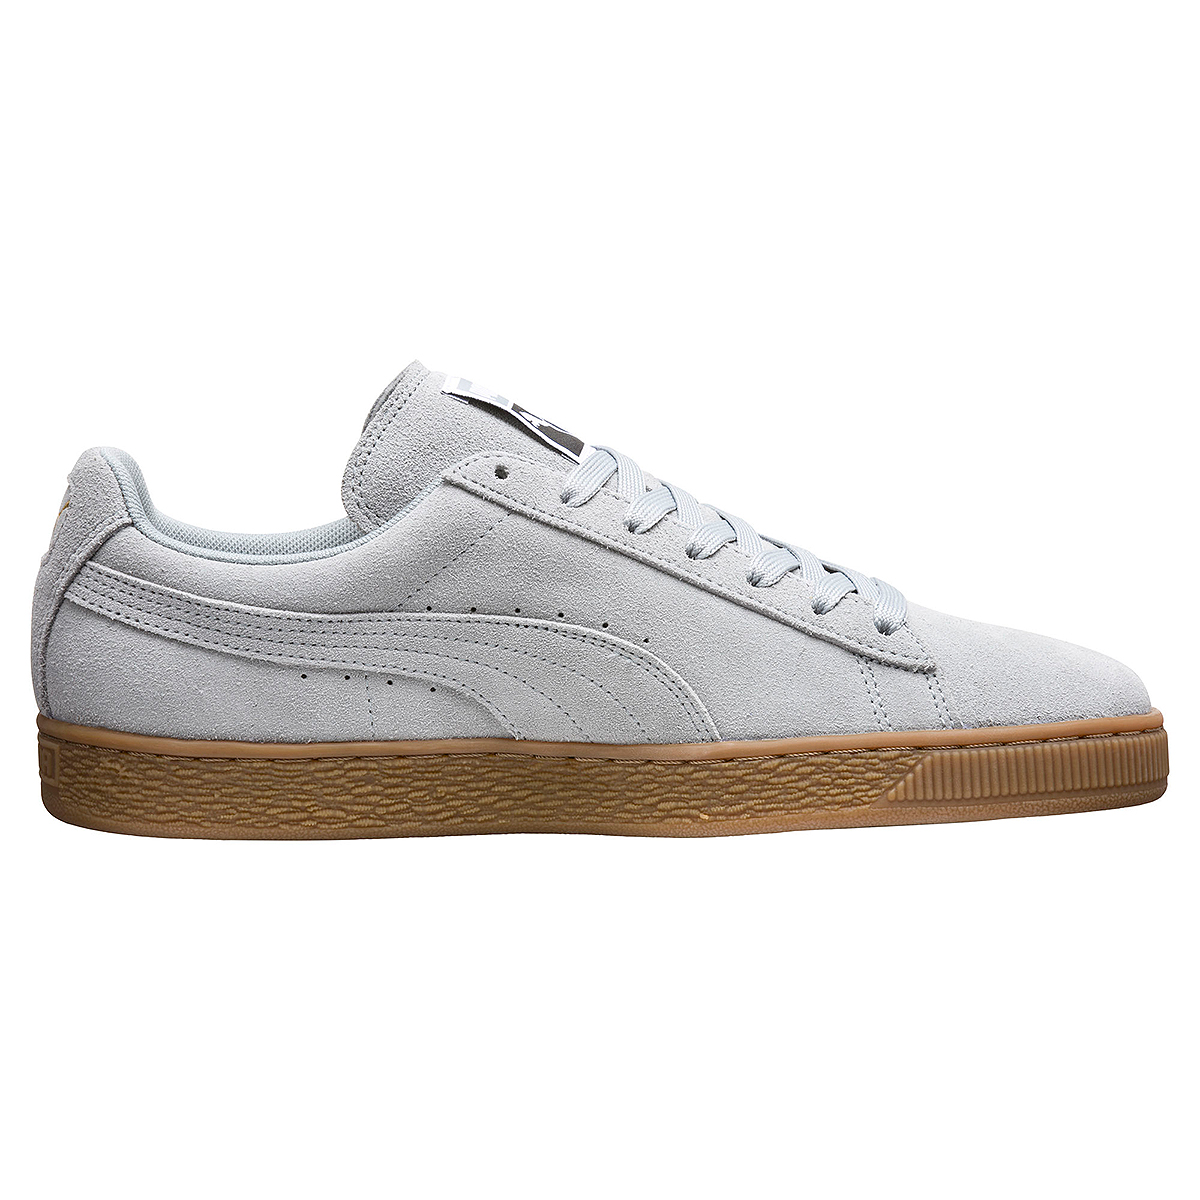 Puma Suede Classic Gum Unisex Sneaker Schuhe Leder grau 366489 02